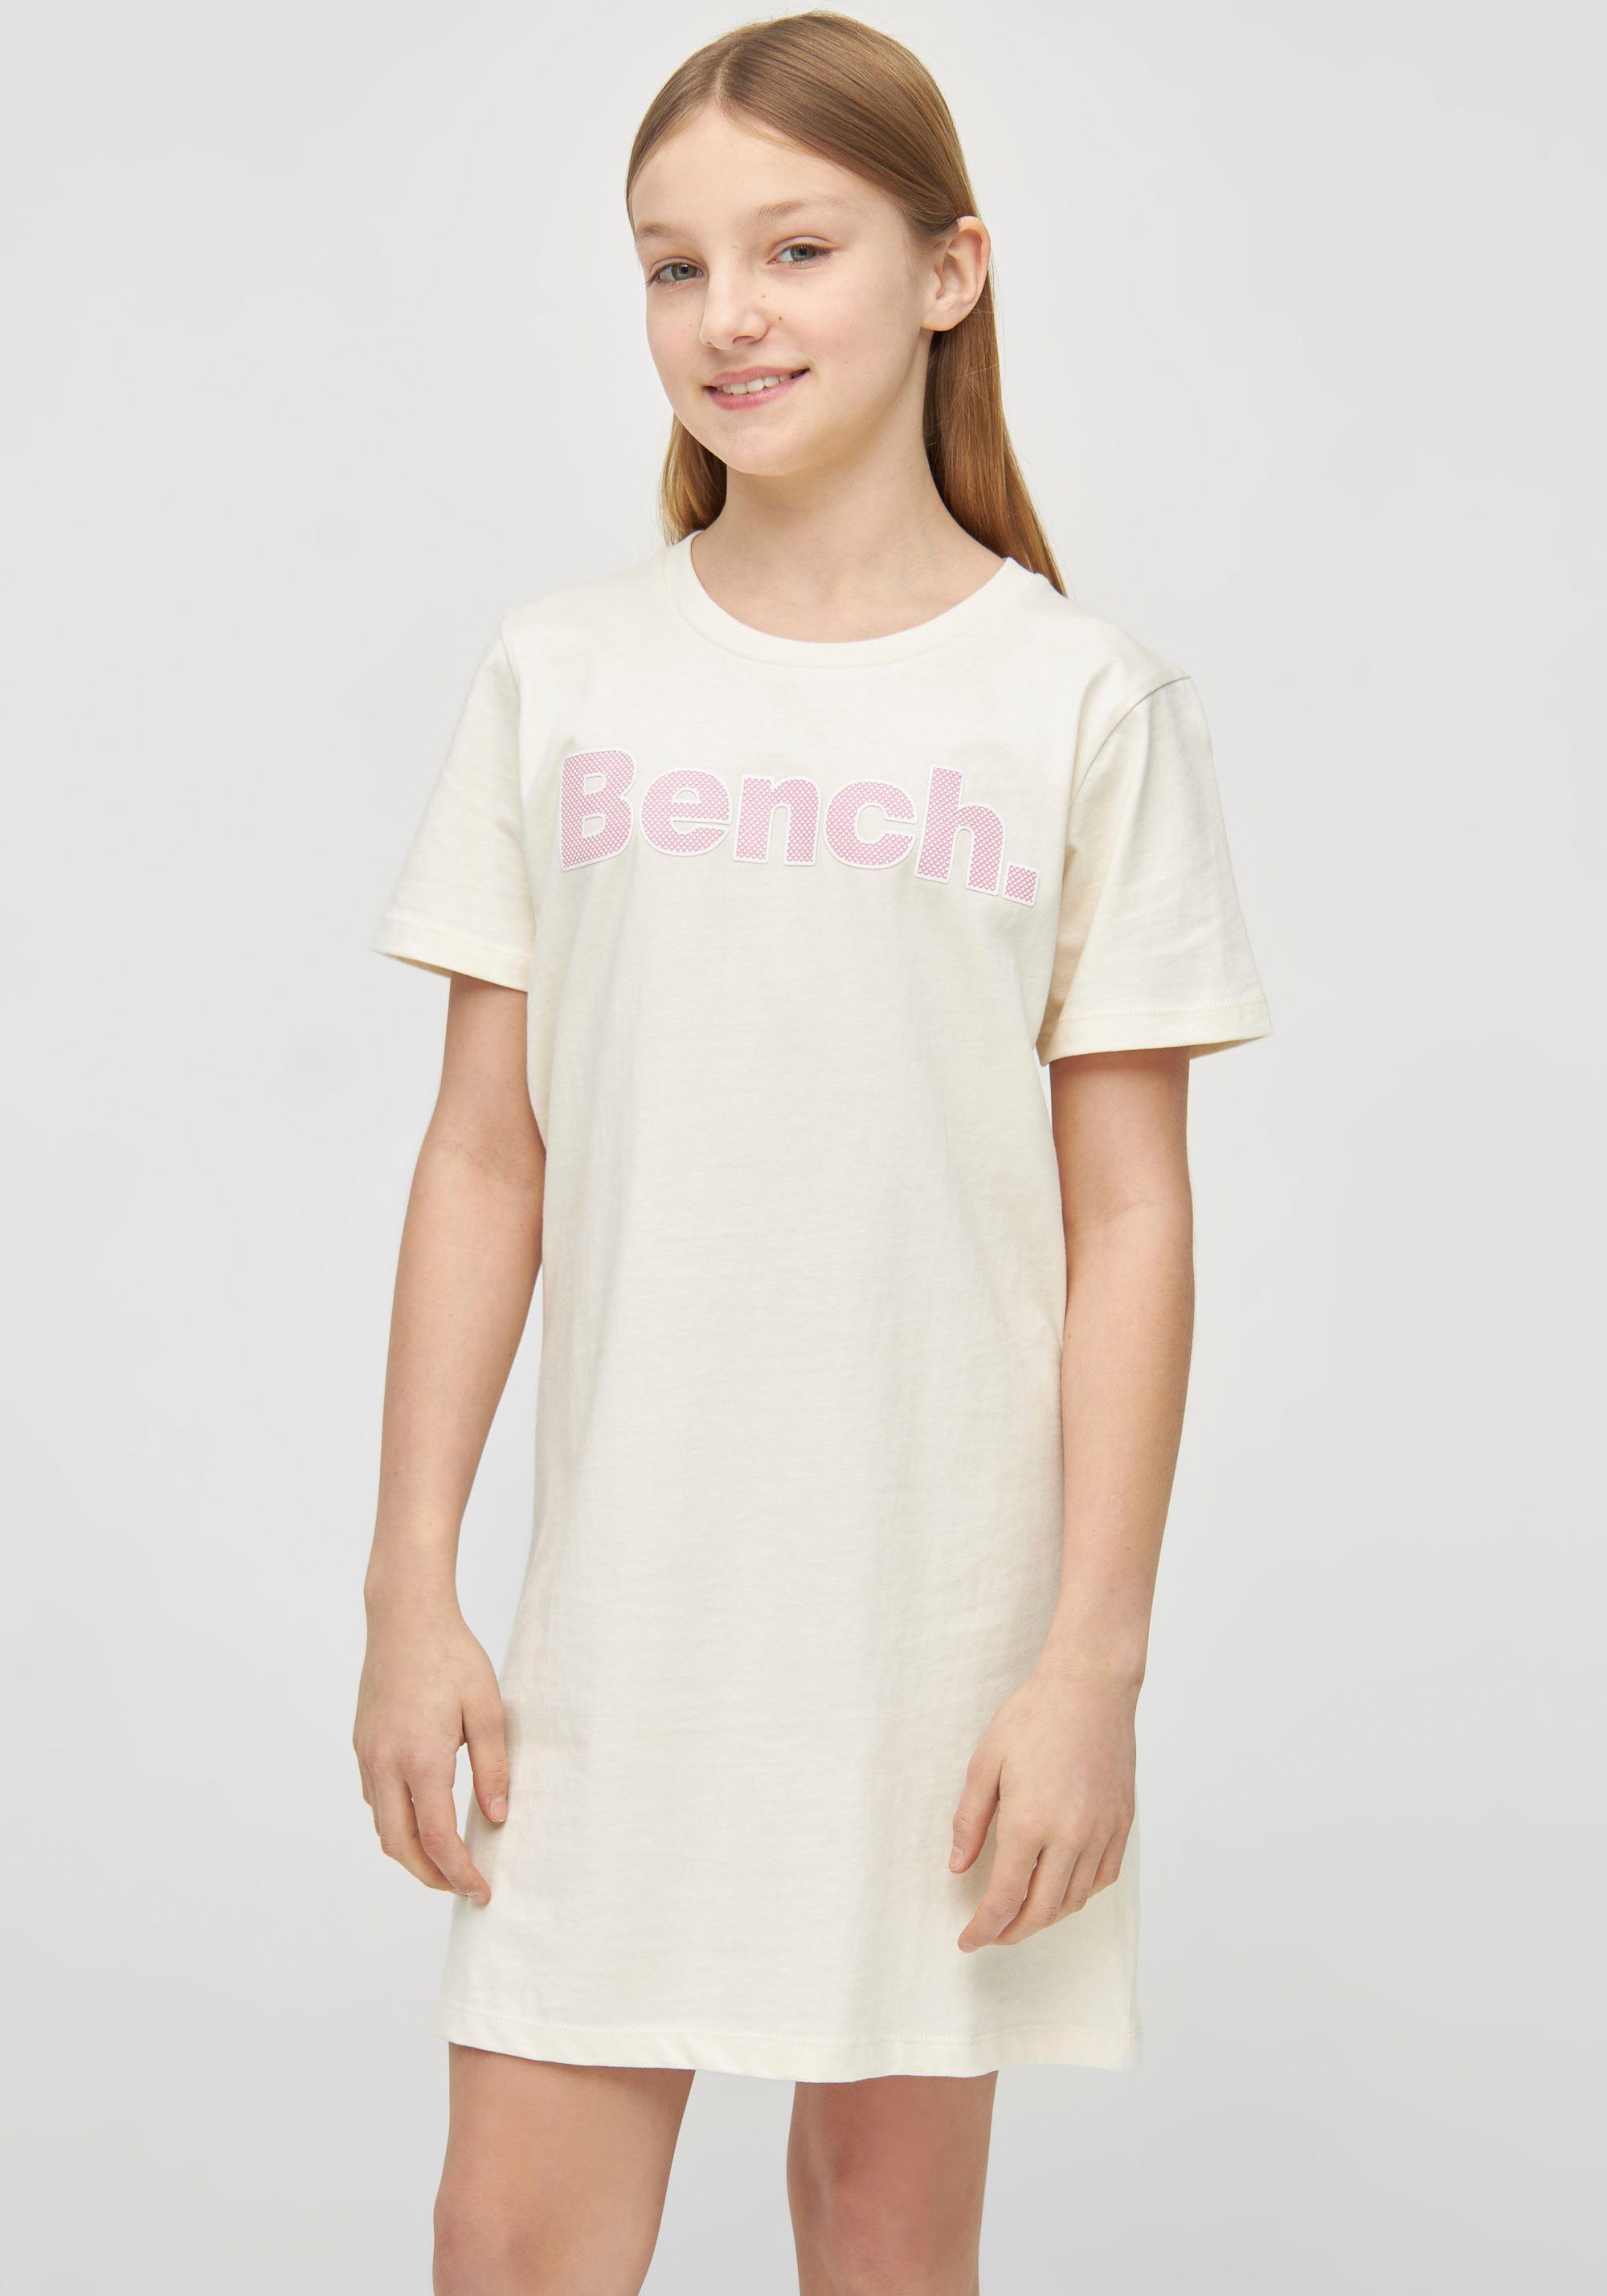 Kann rabattiert werden Bench. T-Shirt JINAG mit Logodruck